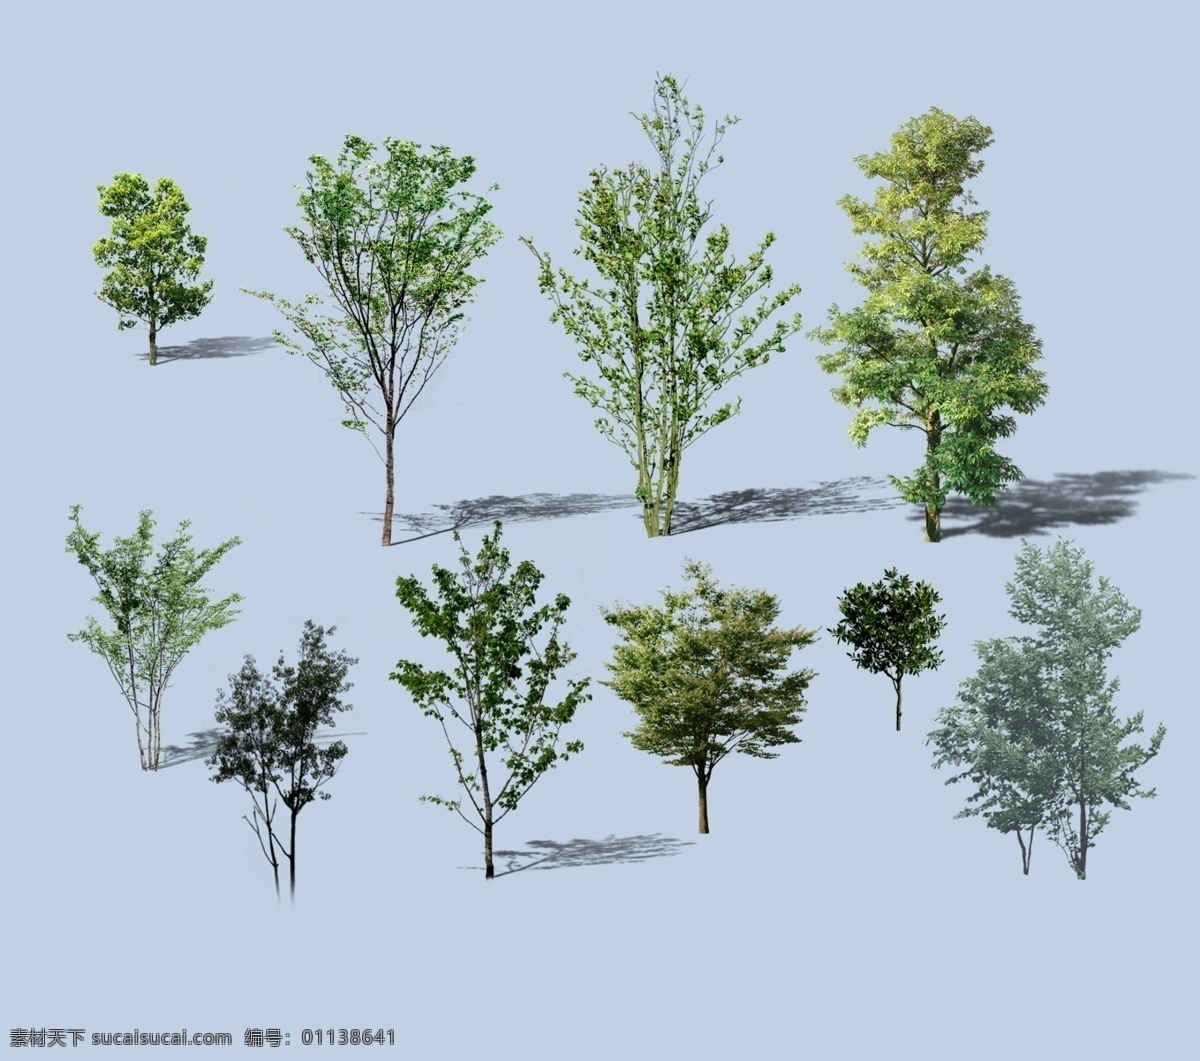 各种 树 植物 景观效果图 各种树 立面表现 透视图 后期素材 环境设计 景观设计